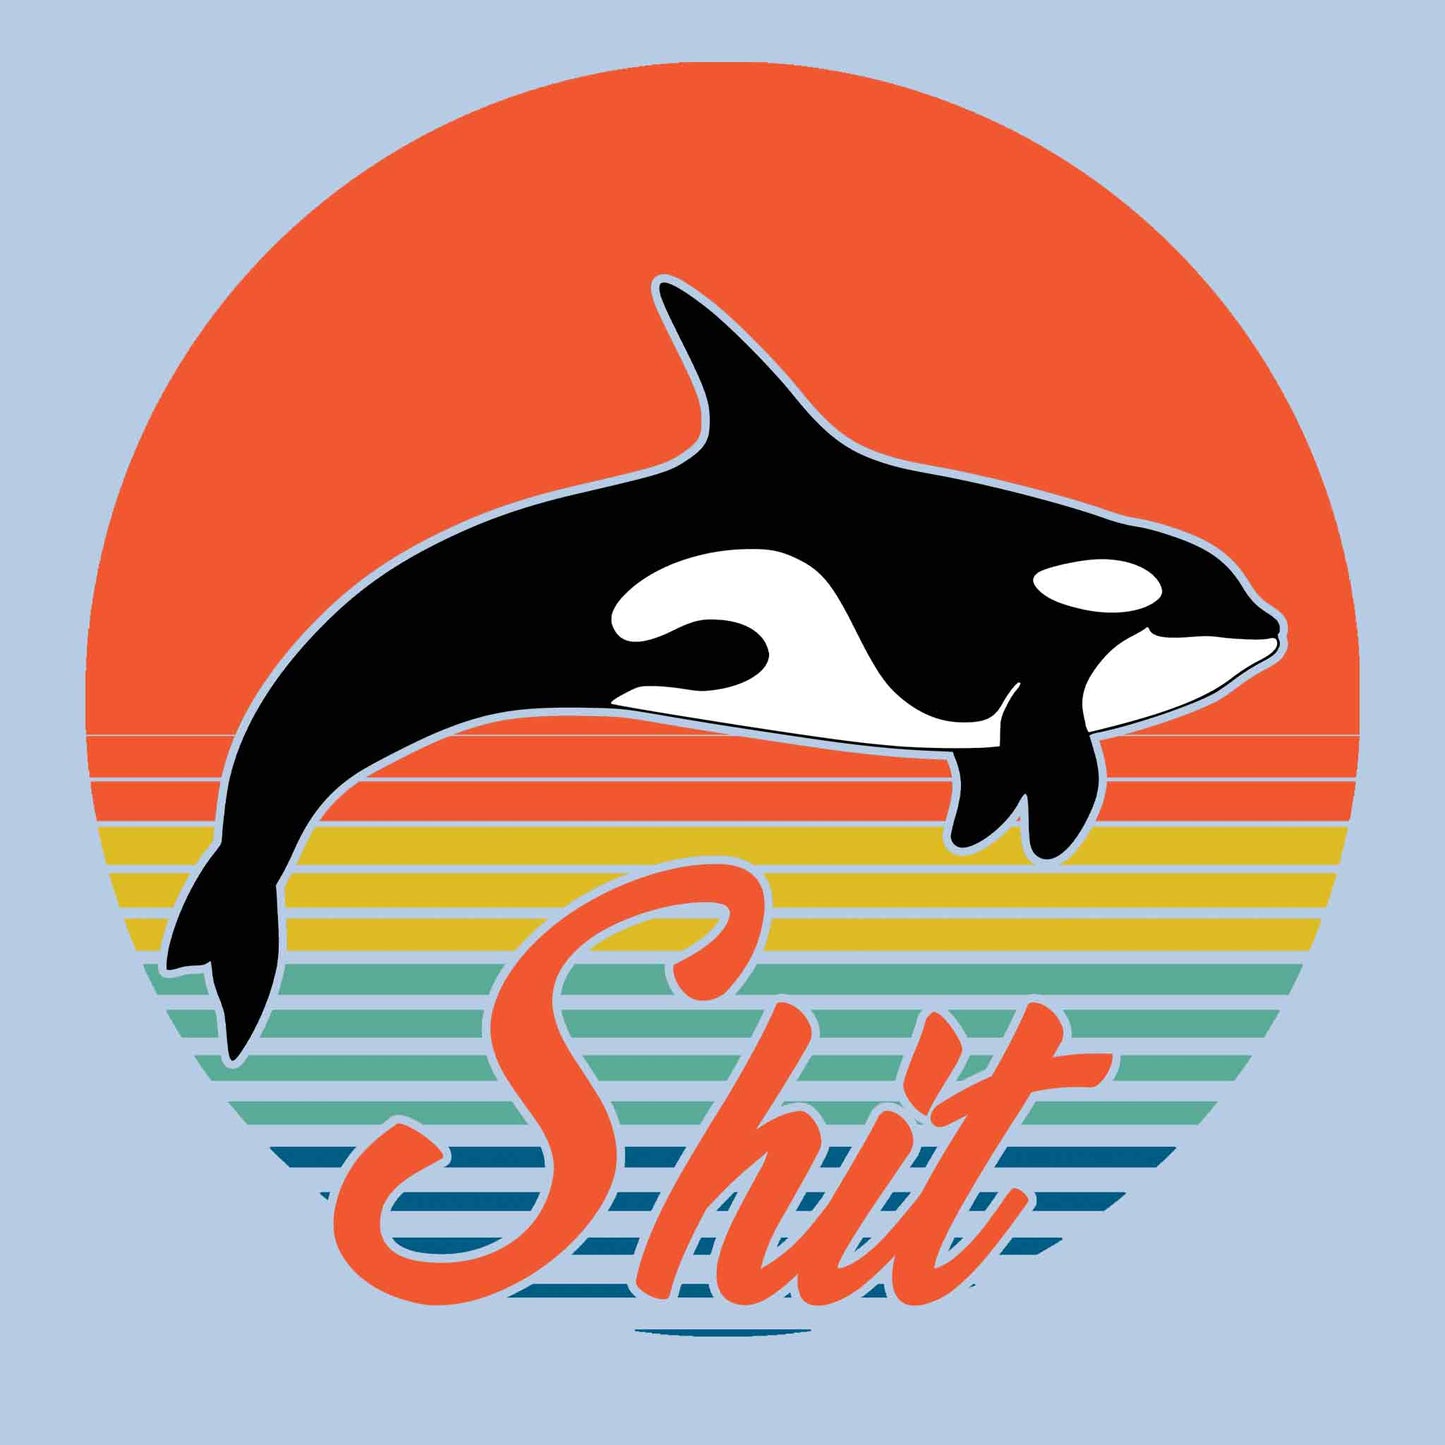 Whale Shit T-Shirt